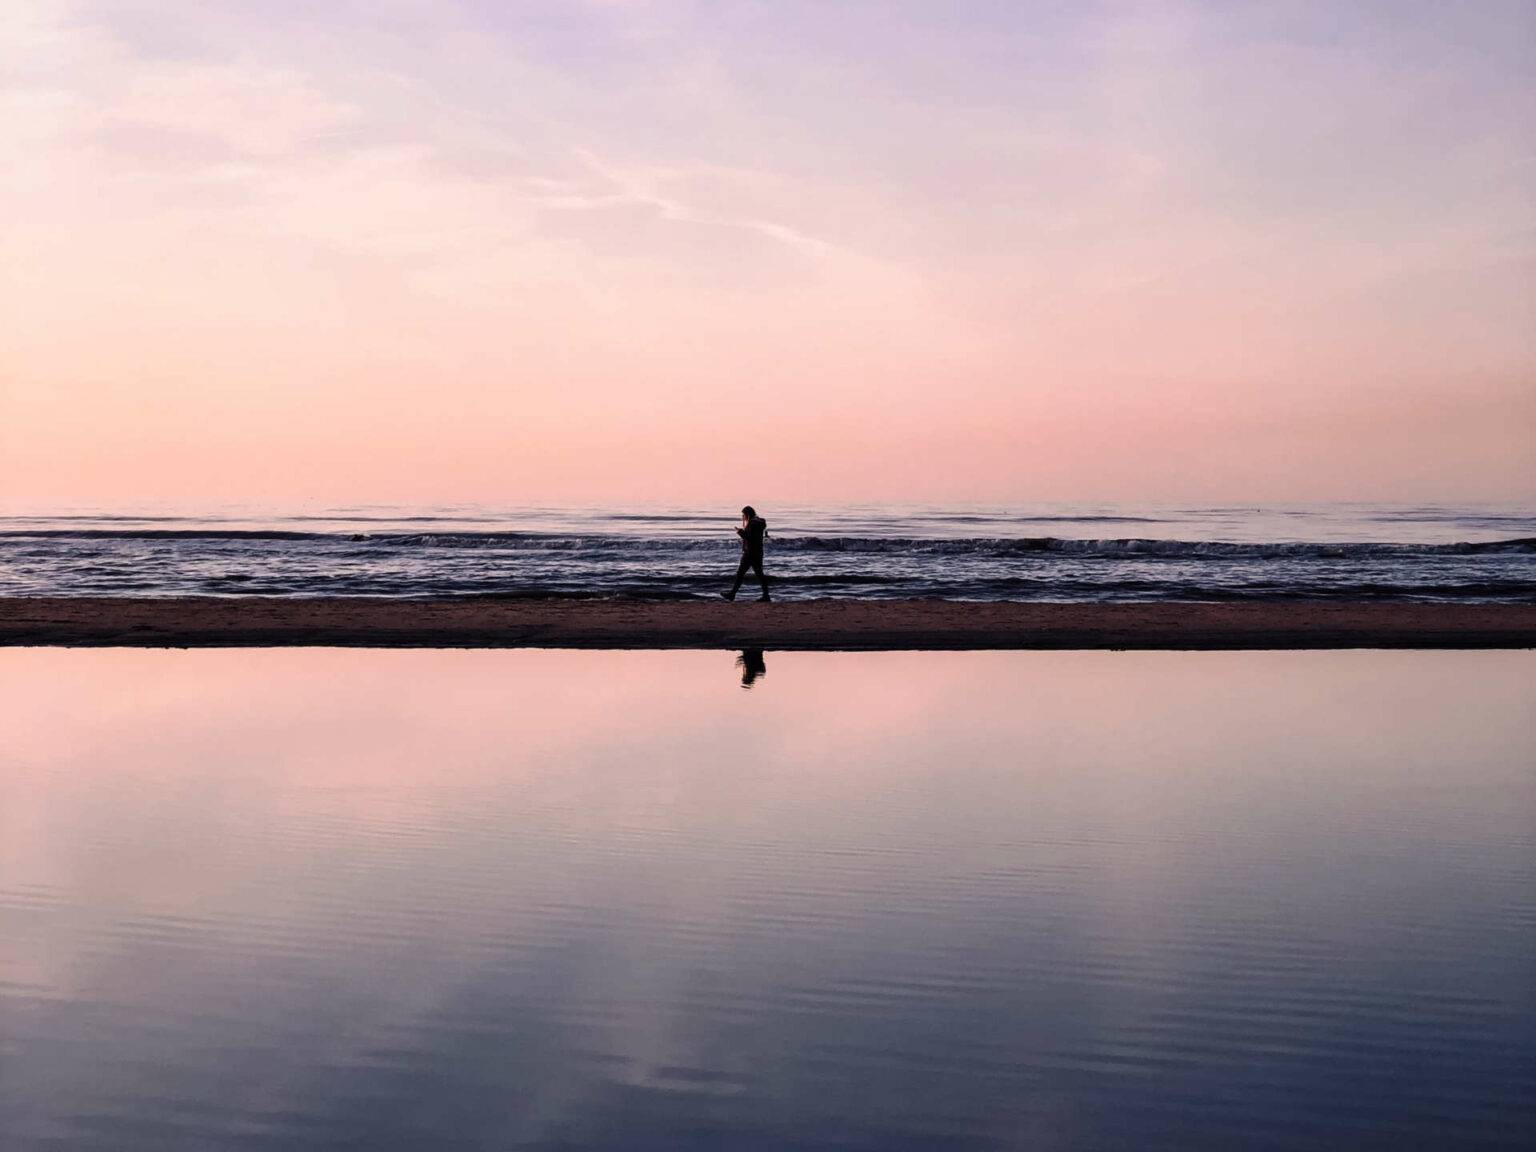 Lila und pink gefärbter Himmel, darunter das Meer und eine kaum erkennbare Person, die den Strand entlang spaziert